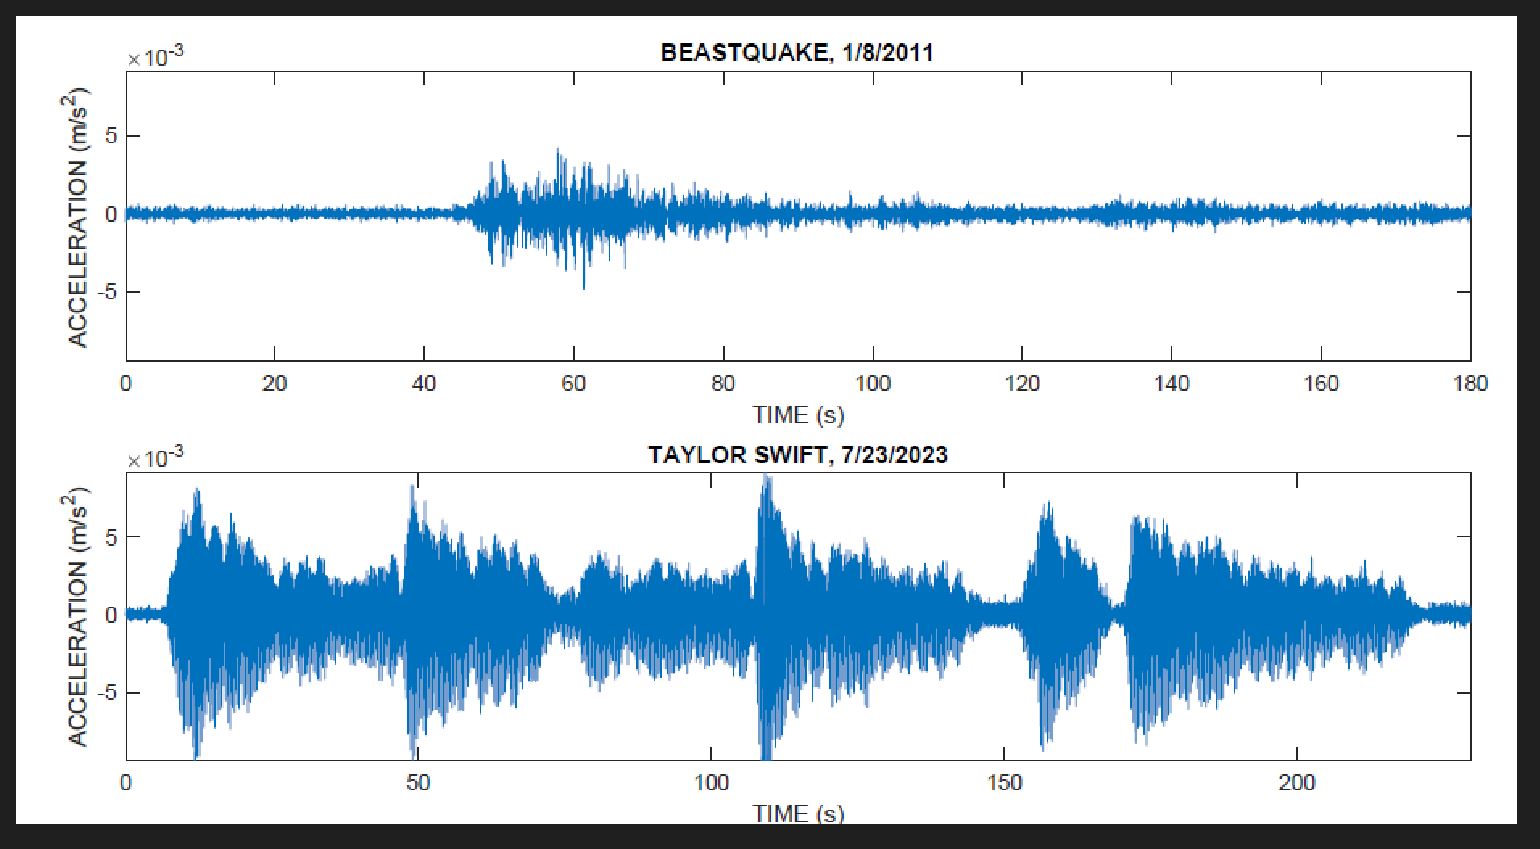 taylor-swiftin-konserinde-dans-edenler-2-3-buyuklugunde-sismik-aktiviteye-neden-oldu-7861-dhaphoto2.jpg